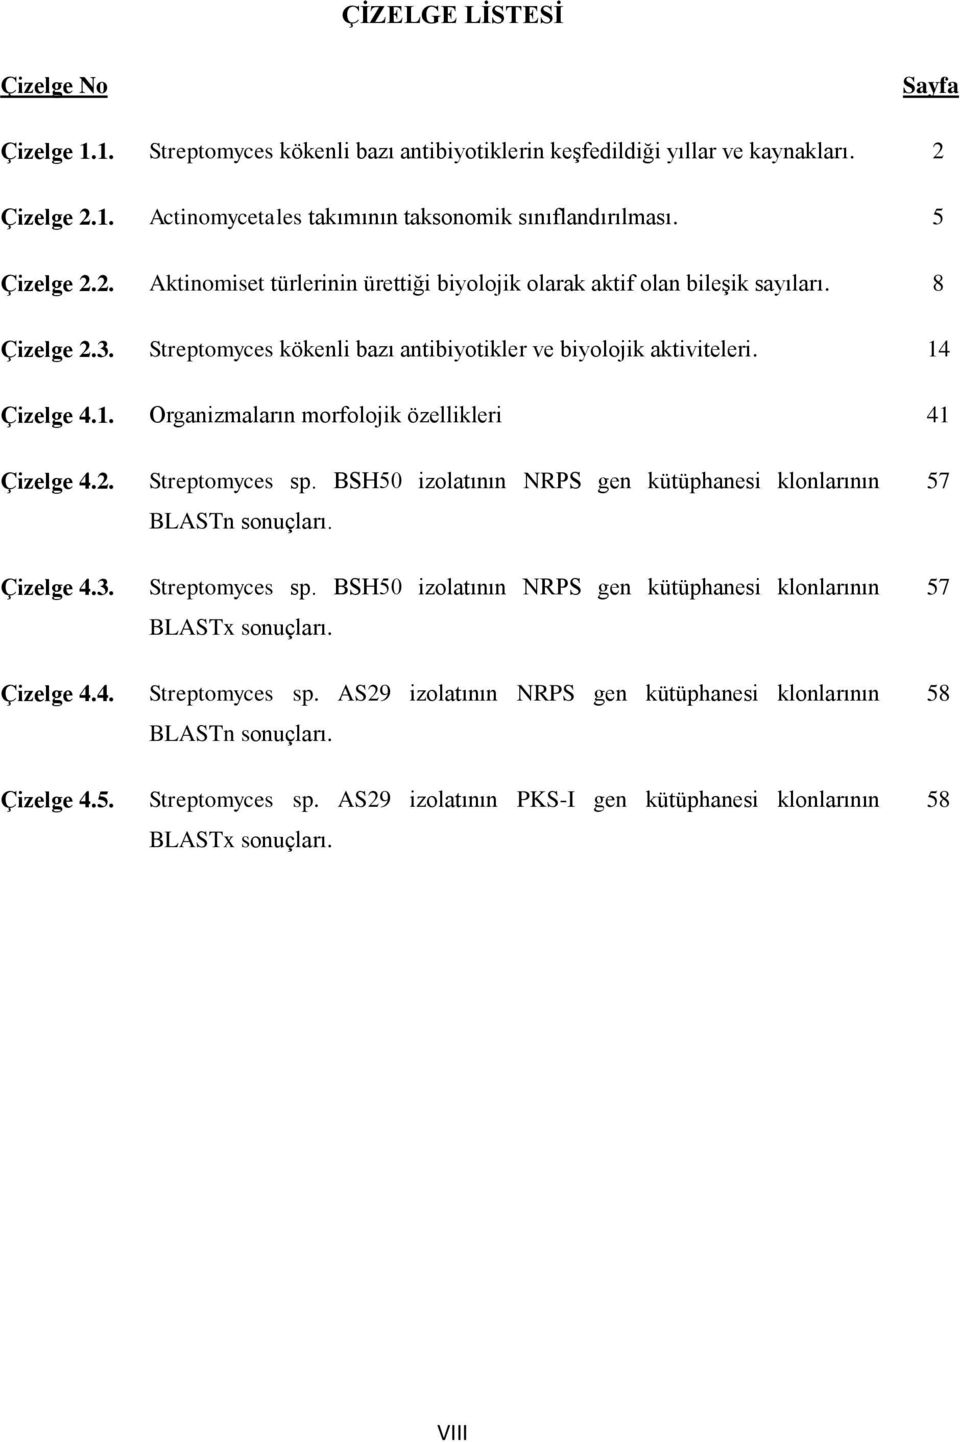 Çizelge 4.1. rganizmaların morfolojik özellikleri 41 Çizelge 4.2. Streptomyces sp. BSH50 izolatının NRPS gen kütüphanesi klonlarının BLASTn sonuçları. 57 Çizelge 4.3. Streptomyces sp. BSH50 izolatının NRPS gen kütüphanesi klonlarının BLASTx sonuçları.